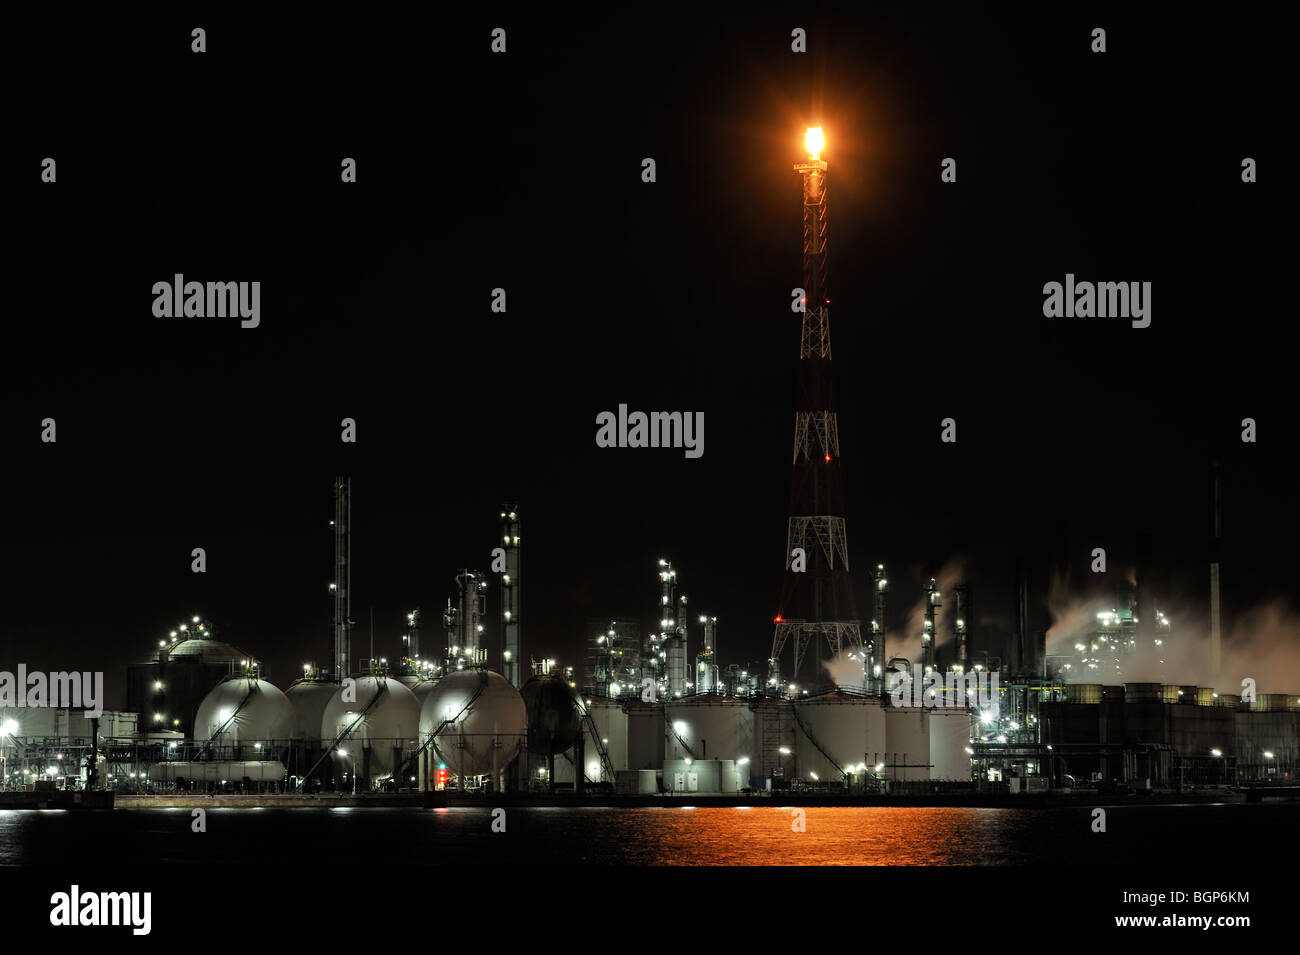 Pylône avec flamme de gaz de combustion à des raffineries de pétrole de l'industrie pétrochimique au port d'anvers la nuit, Belgique Banque D'Images